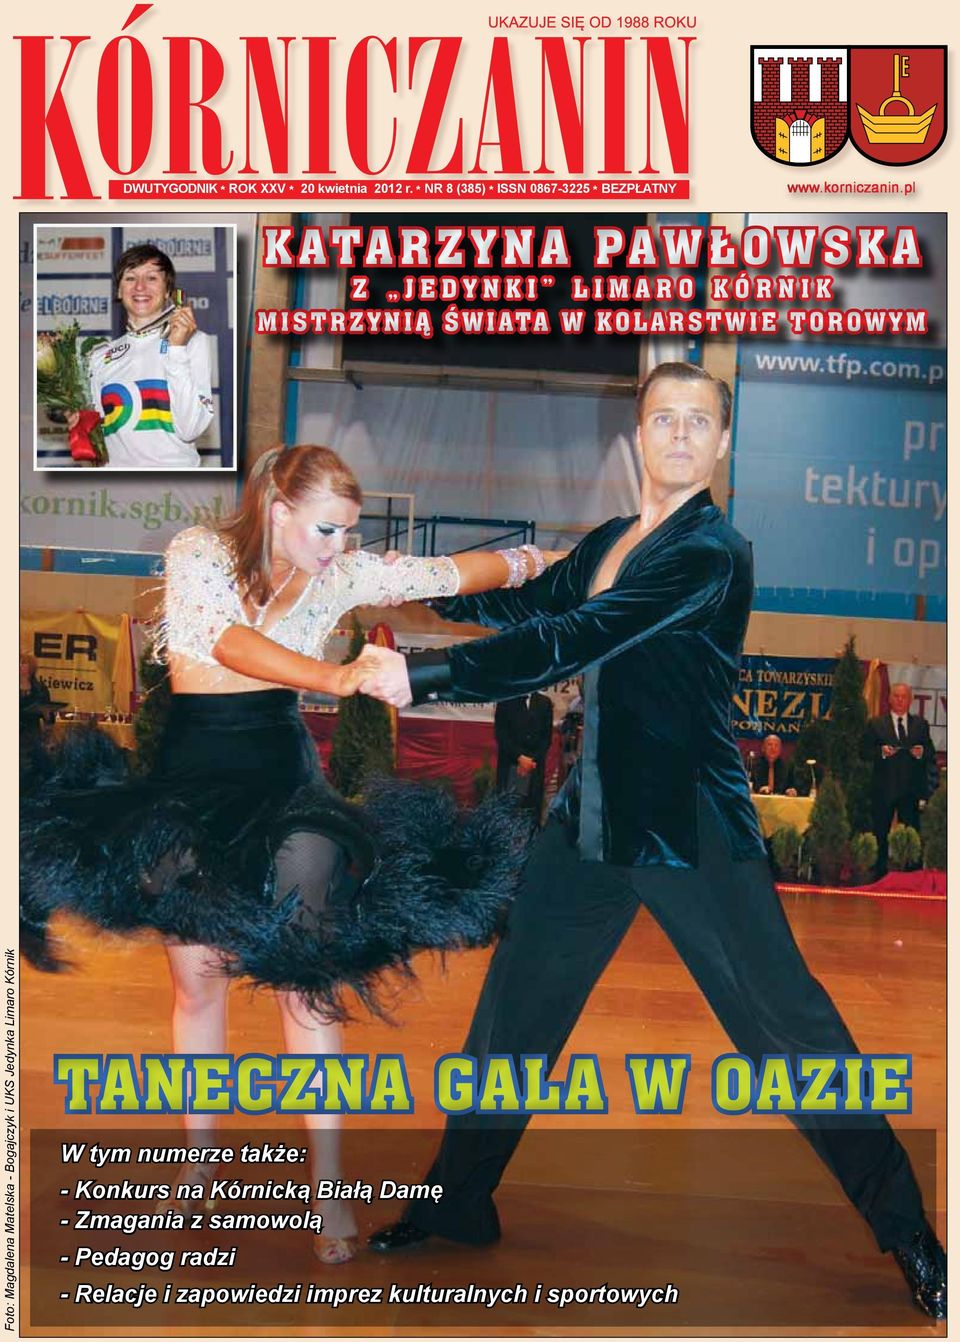 Matelska - Bogajczyk i UKS Jedynka Limaro Kórnik Taneczna gala w Oazie W tym numerze także: - Konkurs na